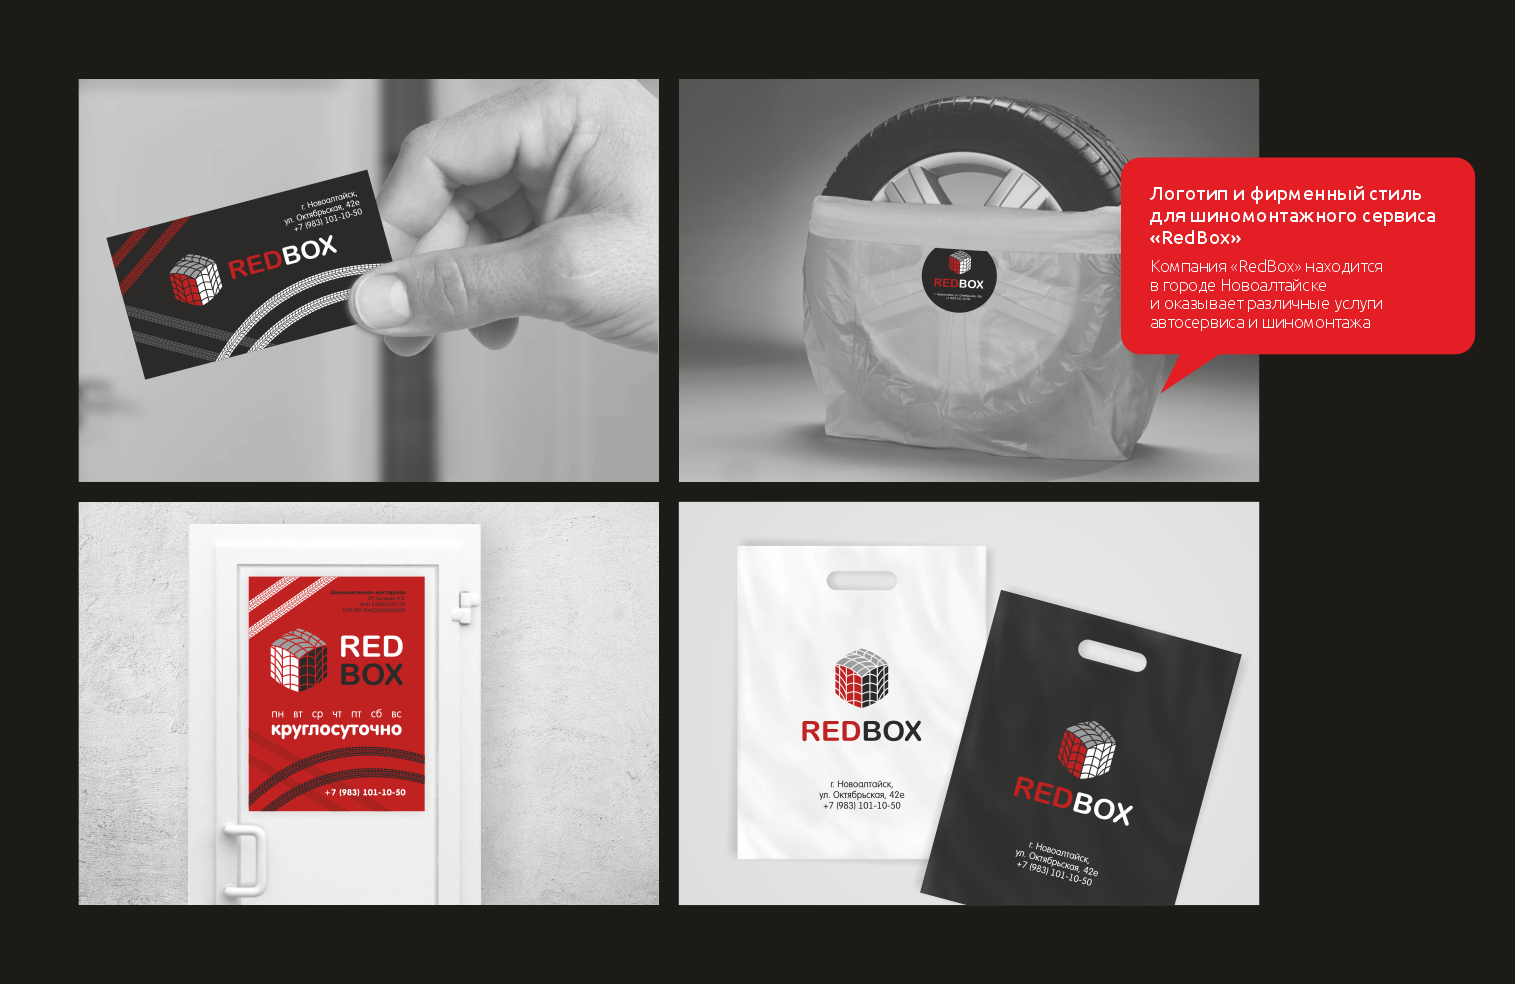 Логотип и фирменный стиль для шиномонтажного сервиса «RedBox»